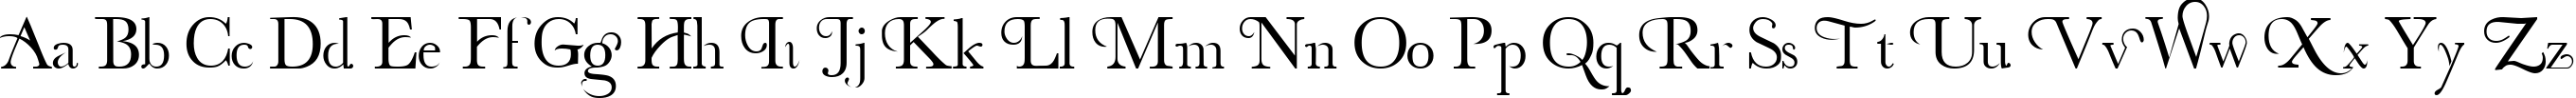 Пример написания английского алфавита шрифтом decorative fontFINAL